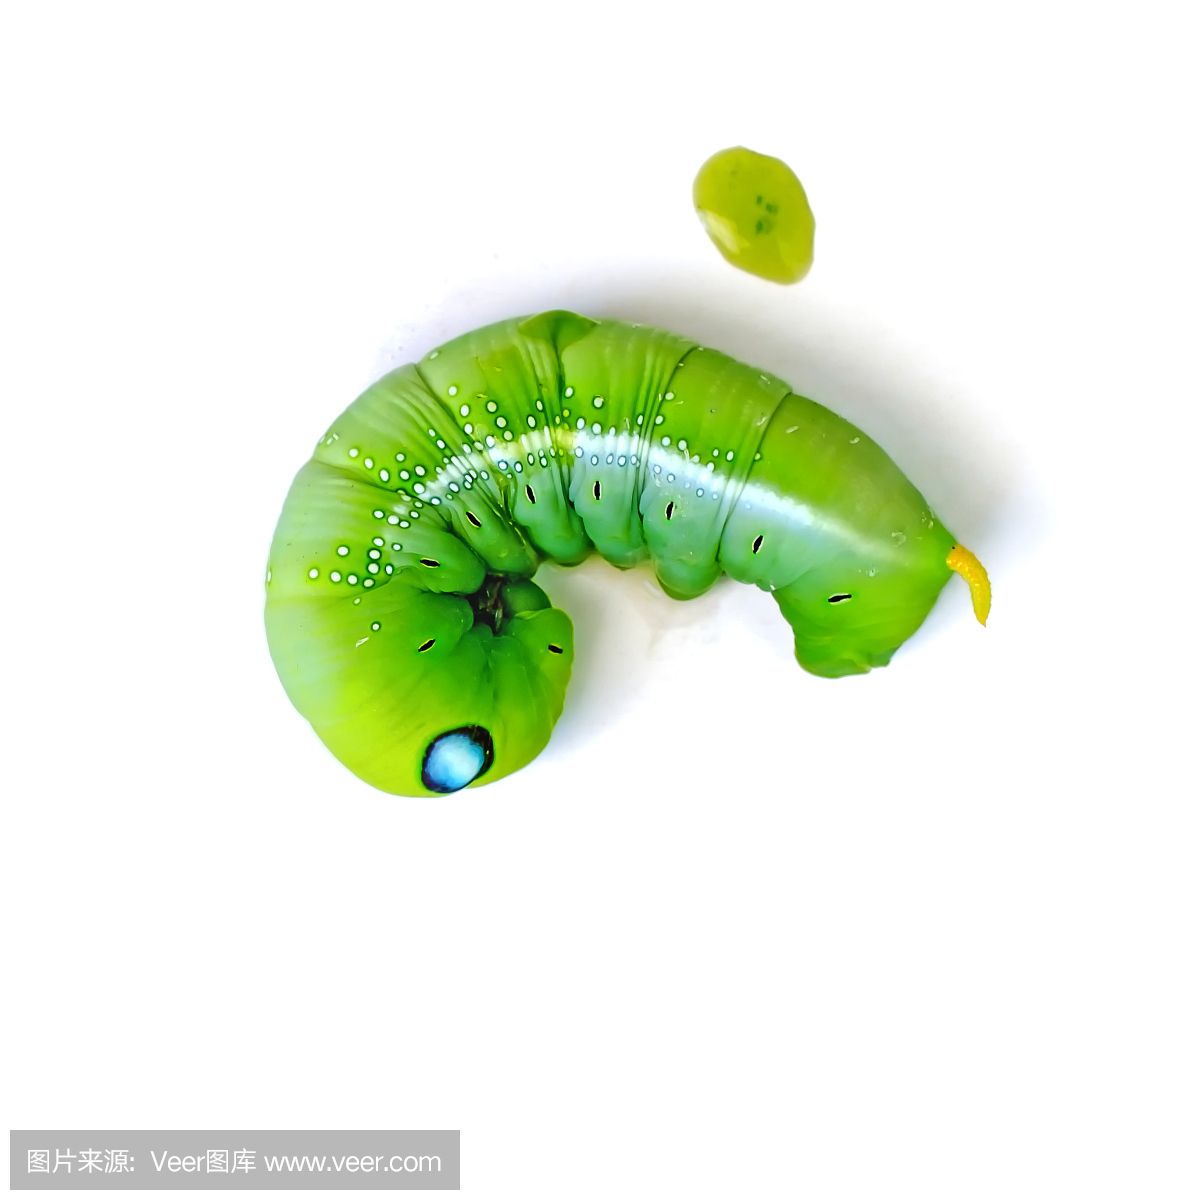 绿色蝴蝶蠕虫(叶吃毛虫)在白色背景上